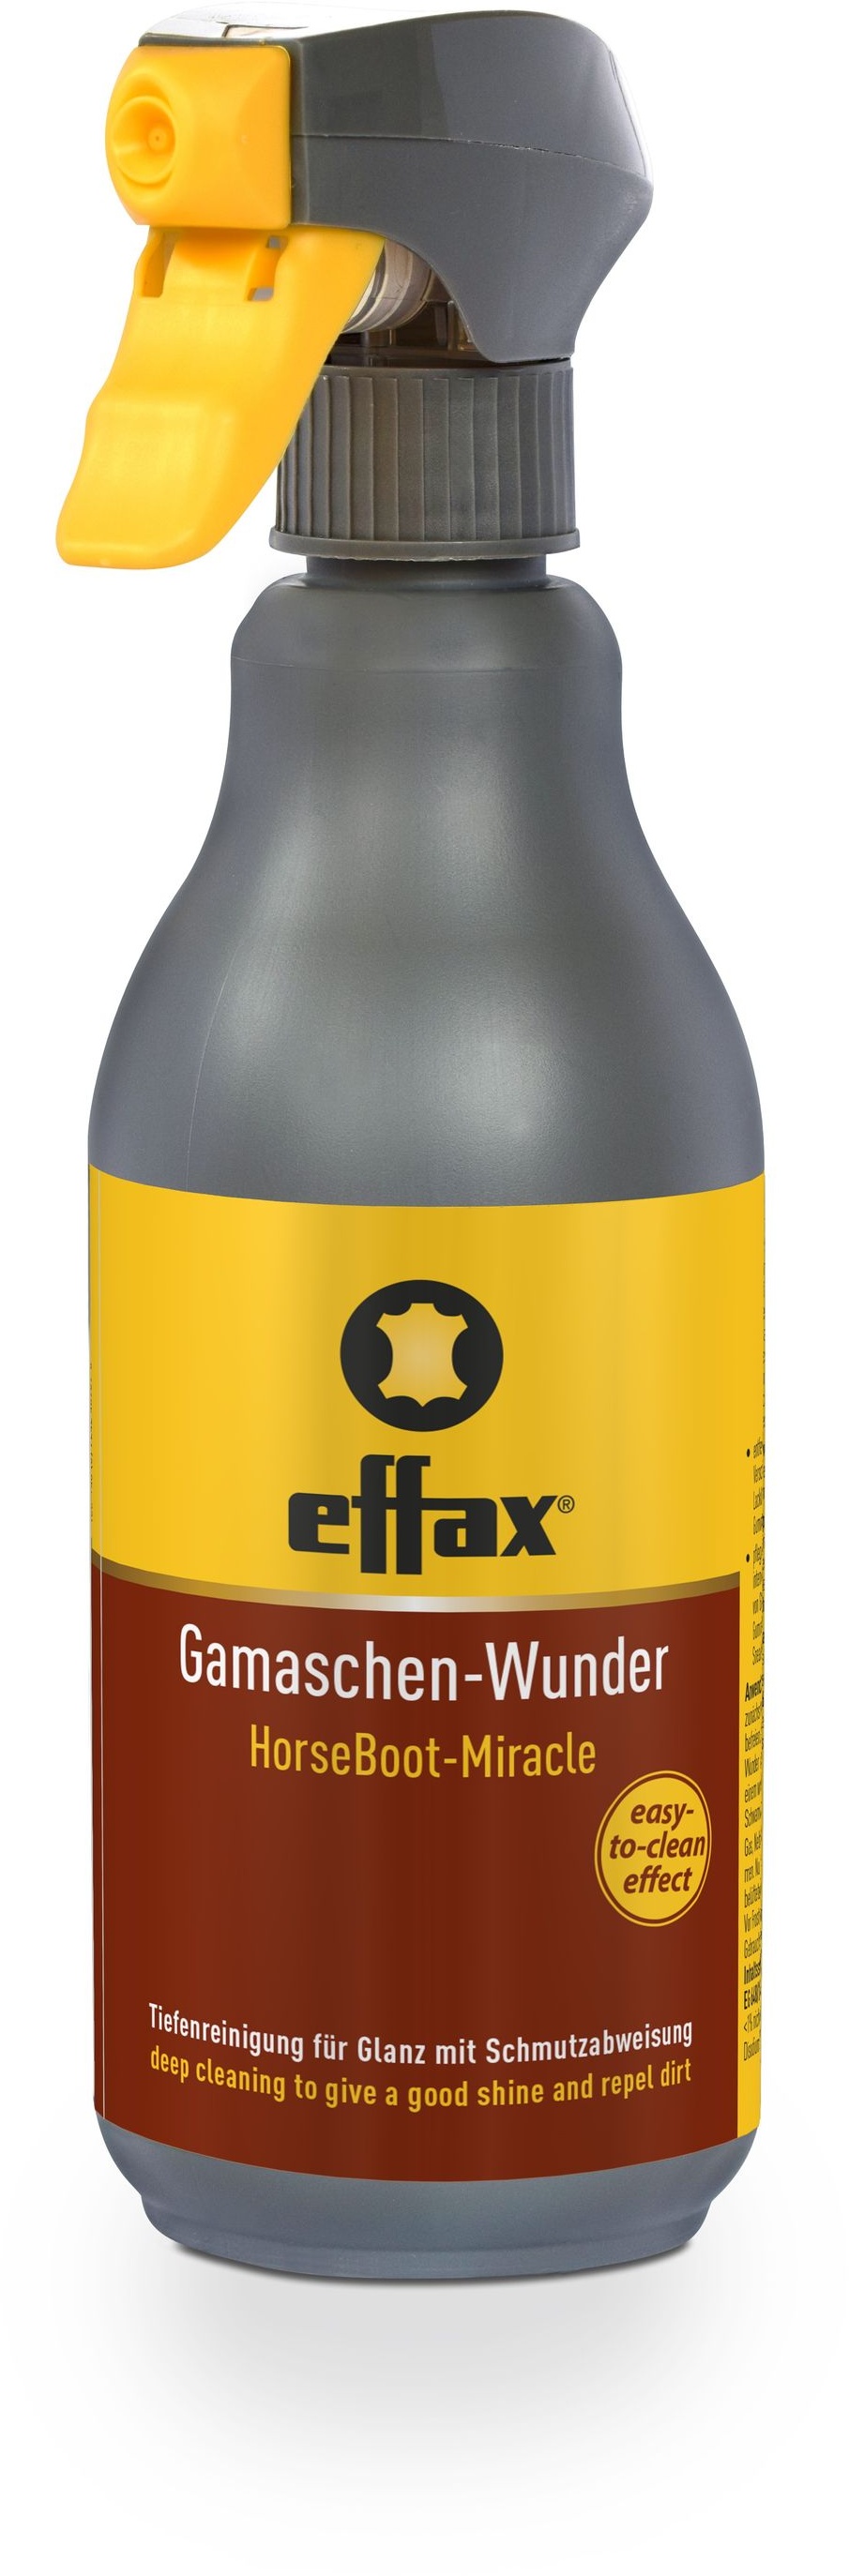 Effax Gamaschen-Wunder 500 ml reinigt Kunststoff Lackleder und Gummioberflächen